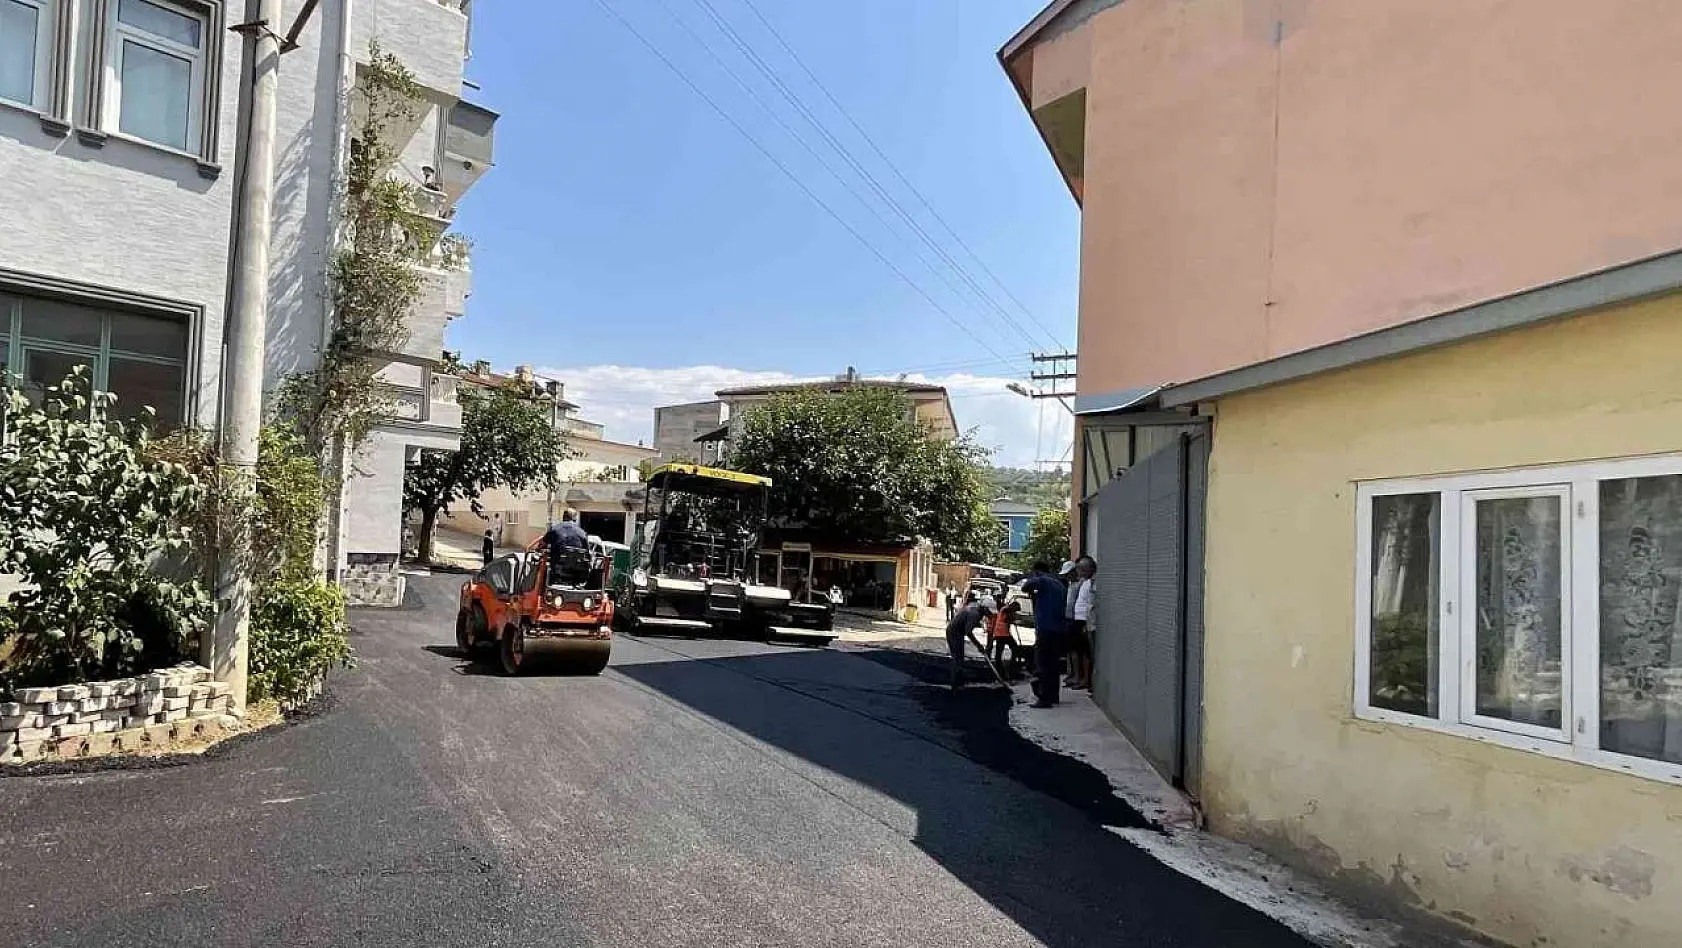 Osmangazi'de yoğun asfalt mesaisi